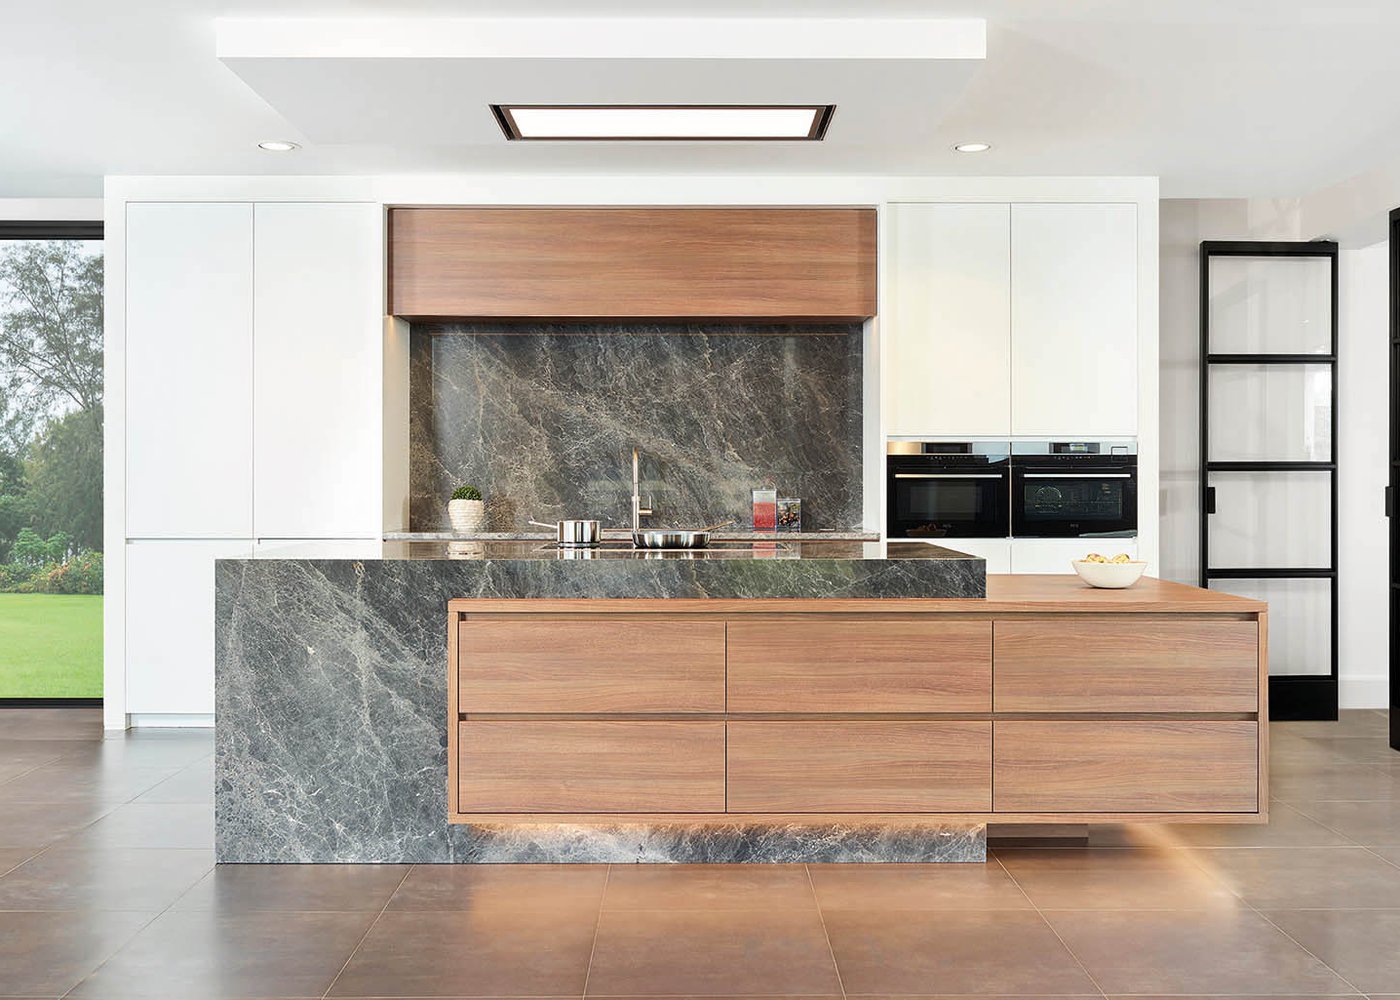 Keuken in roodbruin frontlaminaat - Model Design